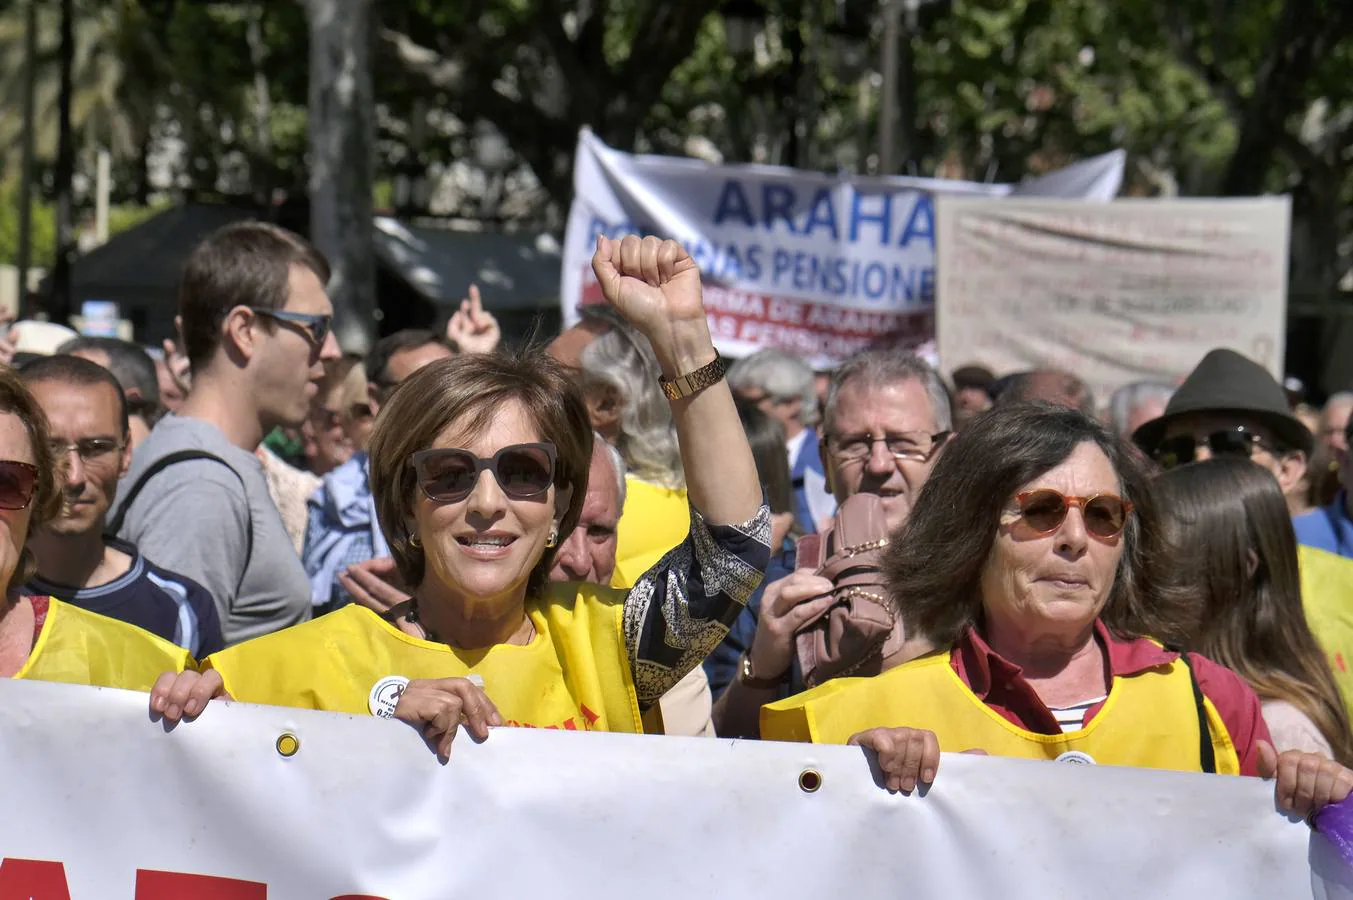 En imágenes, la manifestación por las pensiones en Sevilla